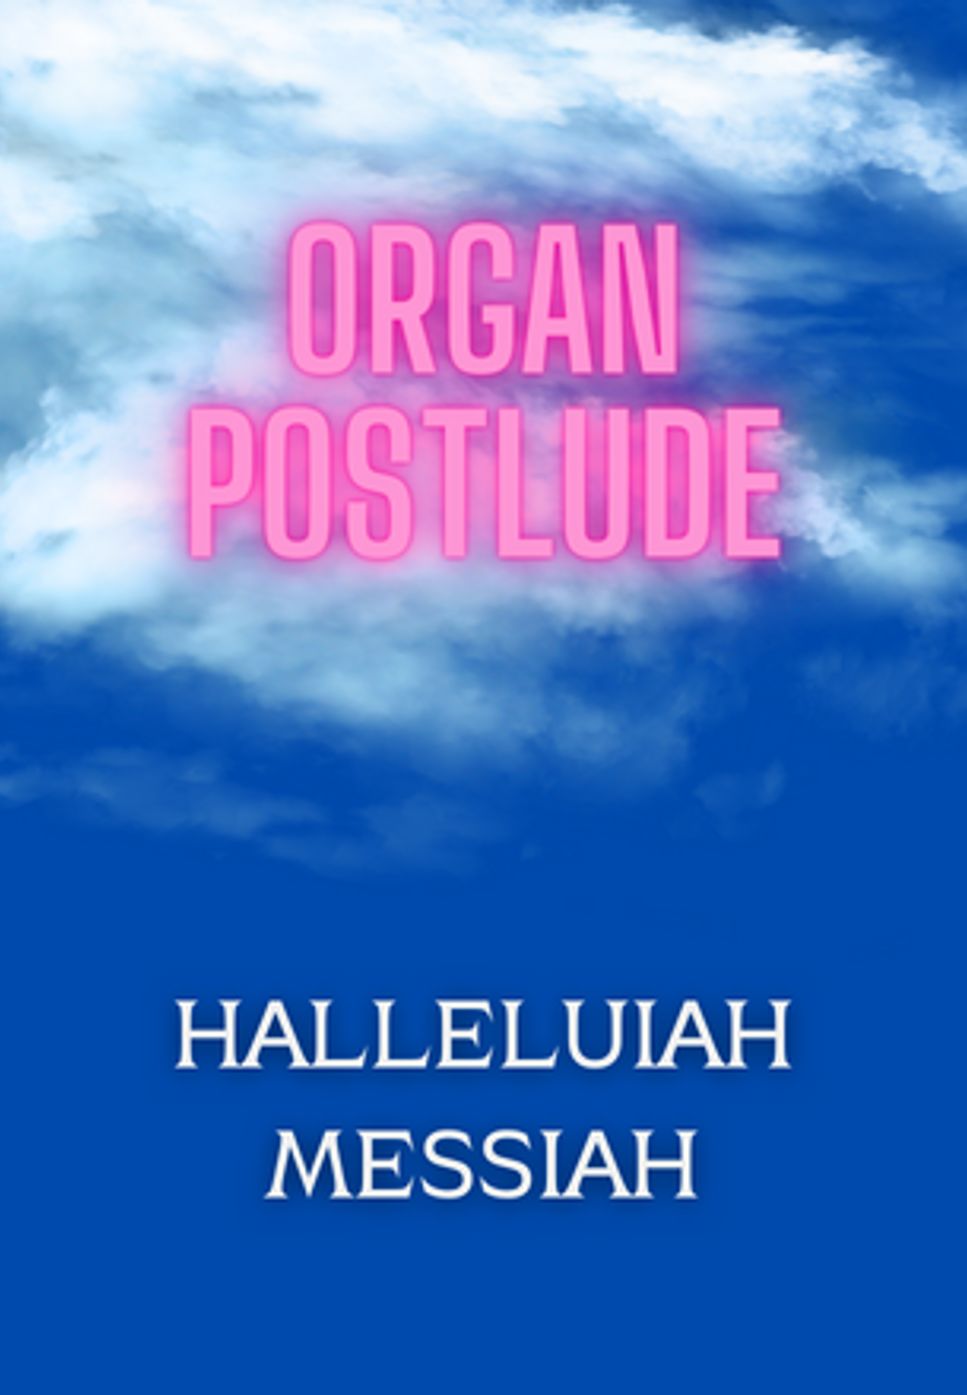 G.F. Handel - Halleluijah from Messiah Organ Postlude Arrangement by Heejin Kim